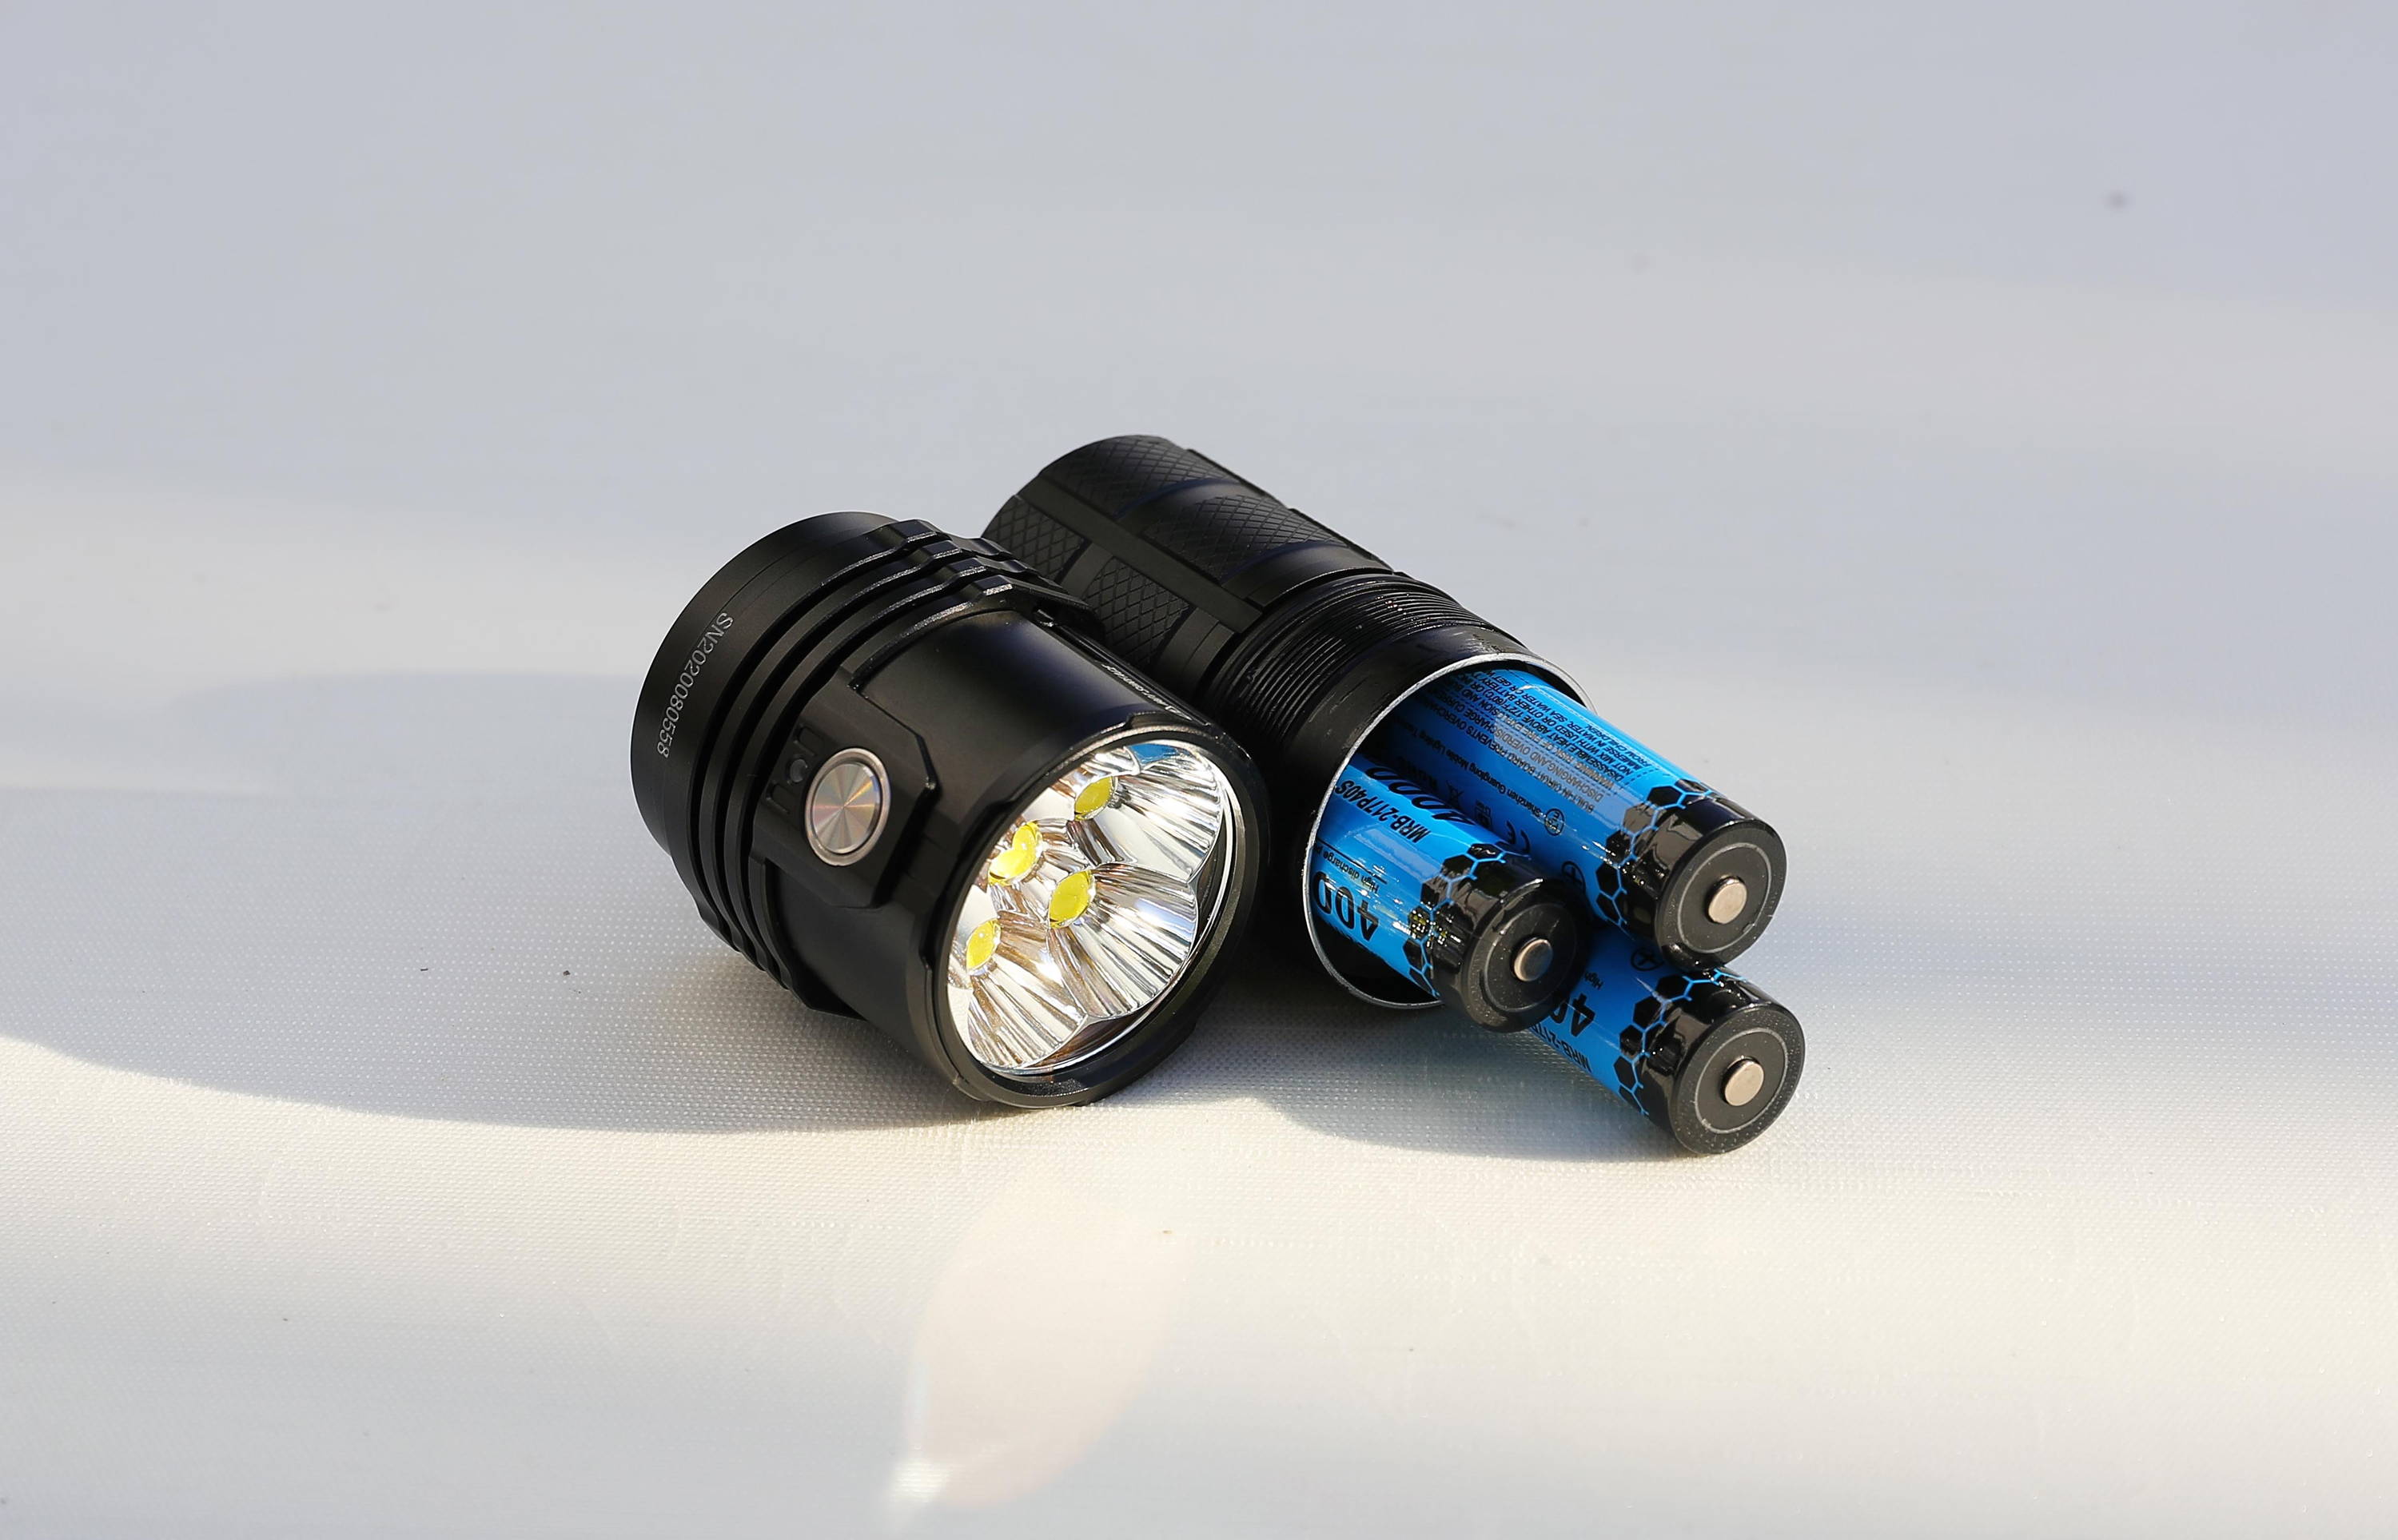 IMALENT LED Flashlight